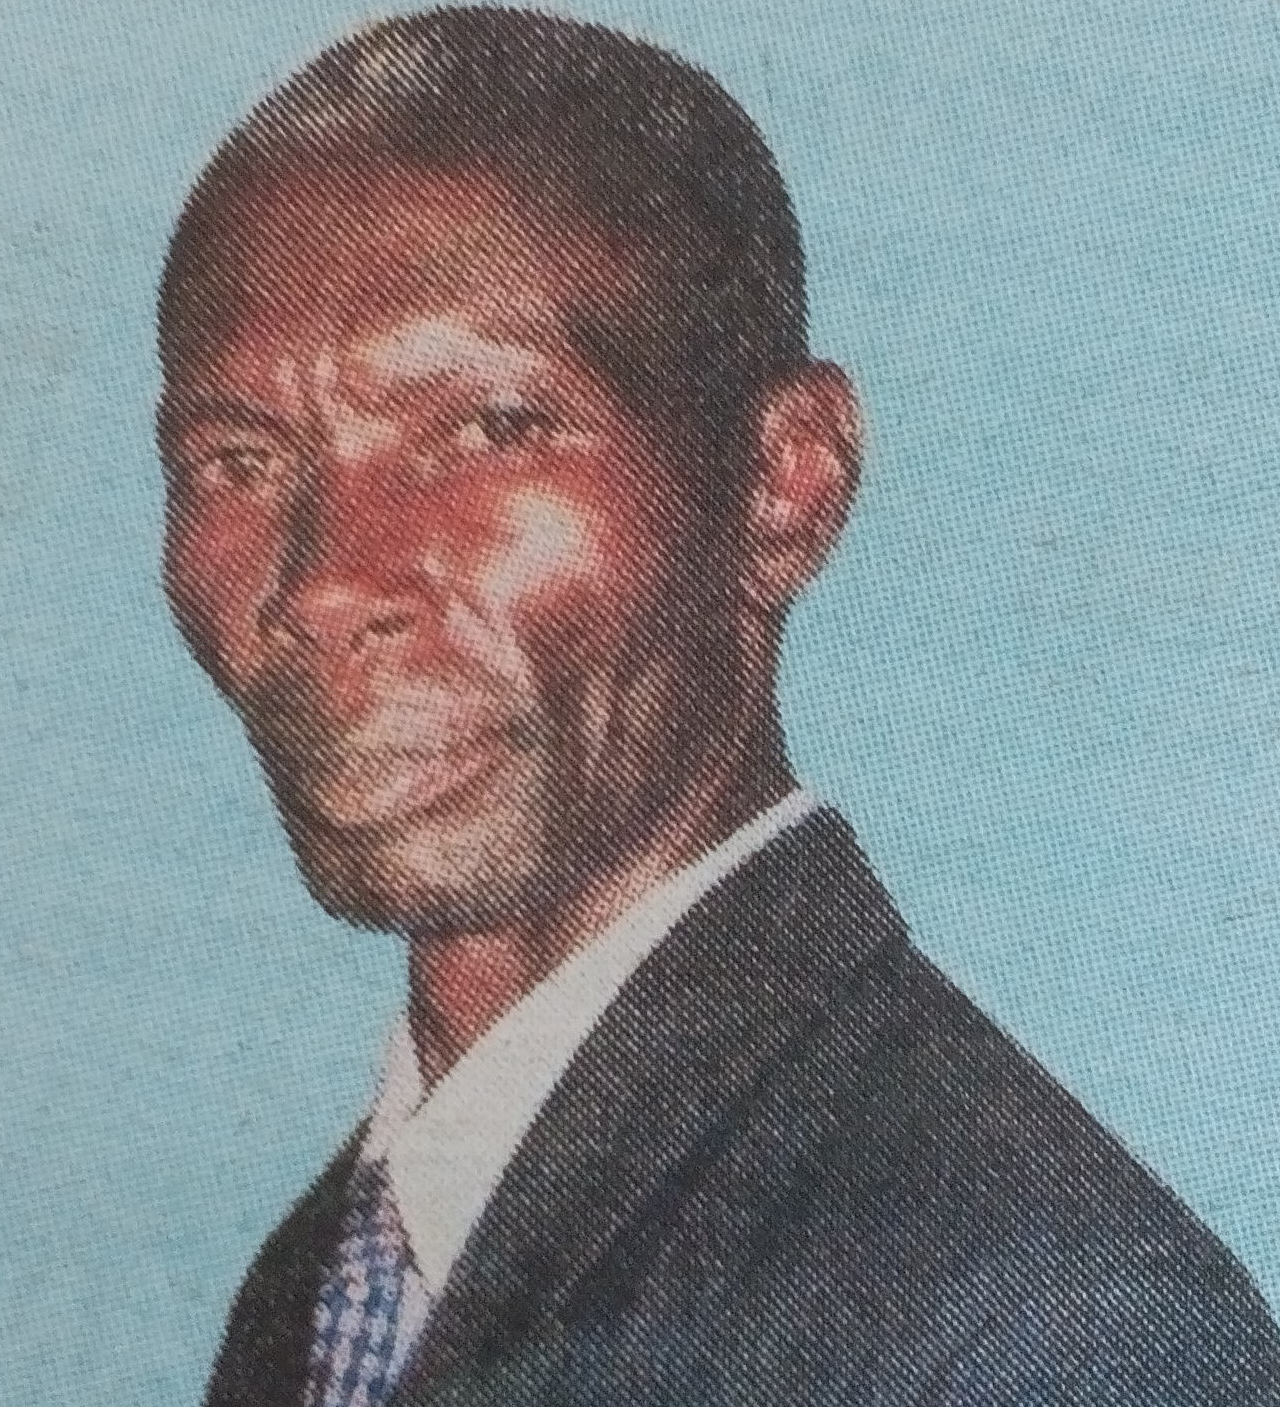 Obituary Image of Hesbon Ambani Mugadia